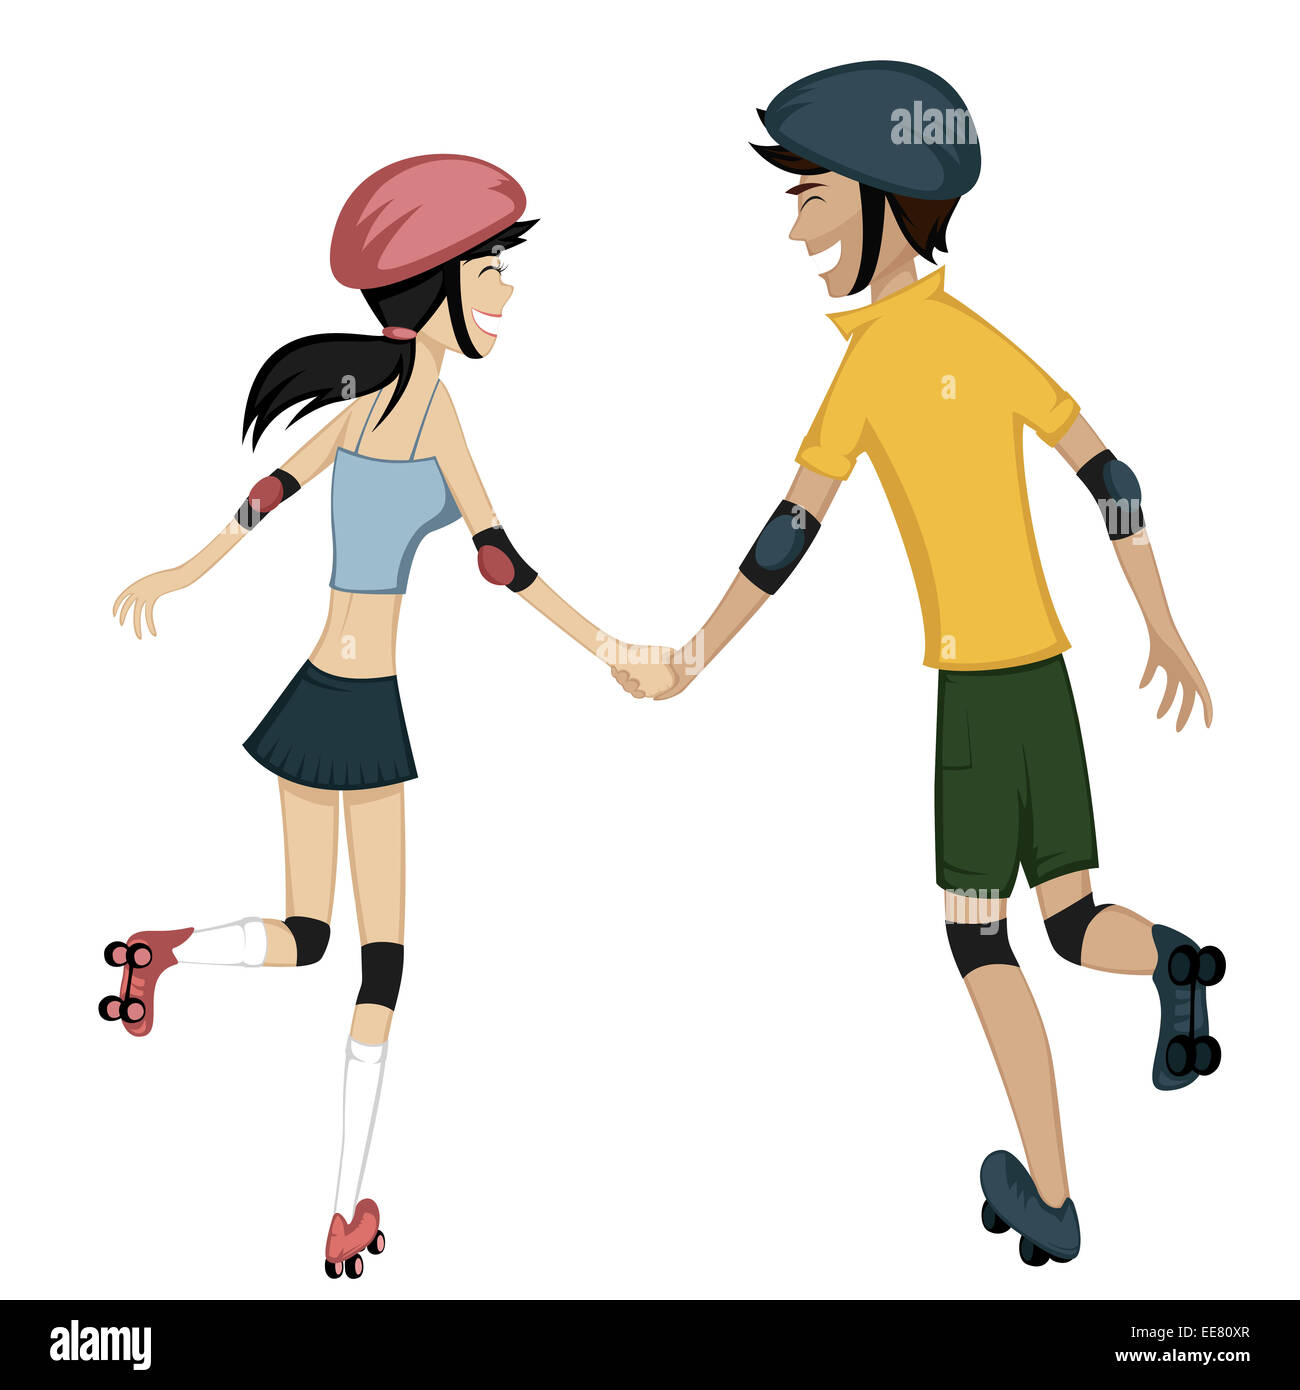 Farbenfrohe und detaillierte Cartoon-Stil Kunst mit einem Lächeln auf den Lippen und froh, dass jungen Paar hält die Hände während des Skatens zusammen Stockfoto